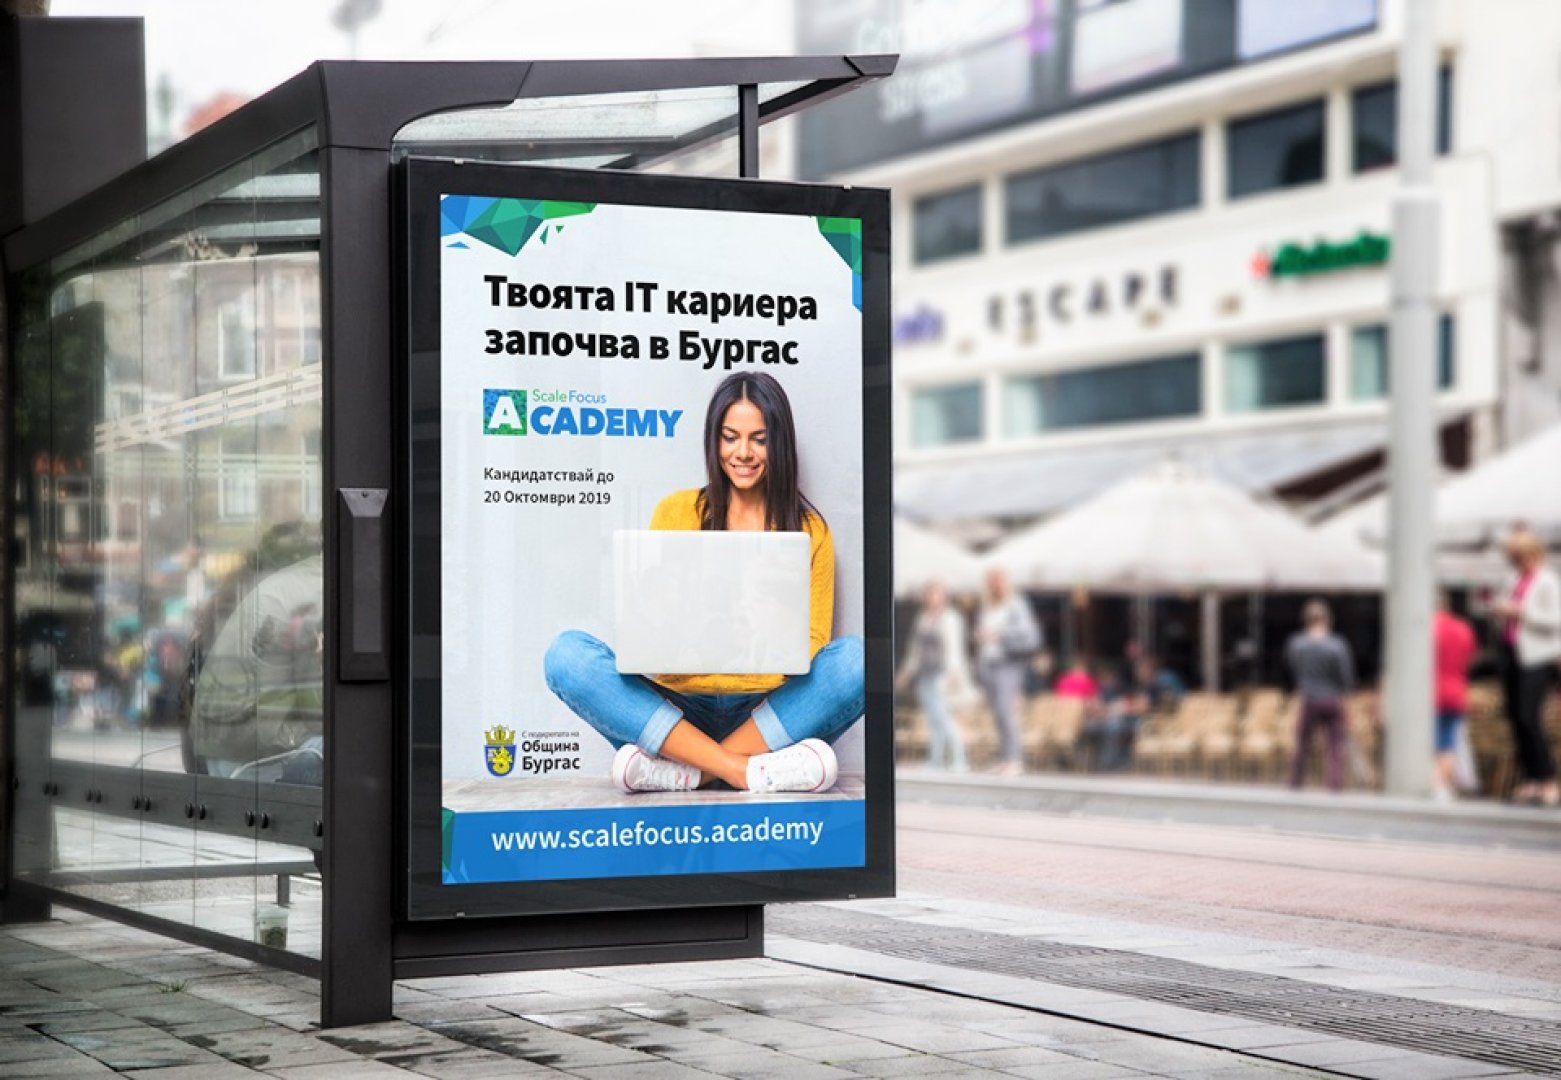  ScaleFocus Academy отново предлага безплатно ИТ обучение в Бургас - E-Burgas.com